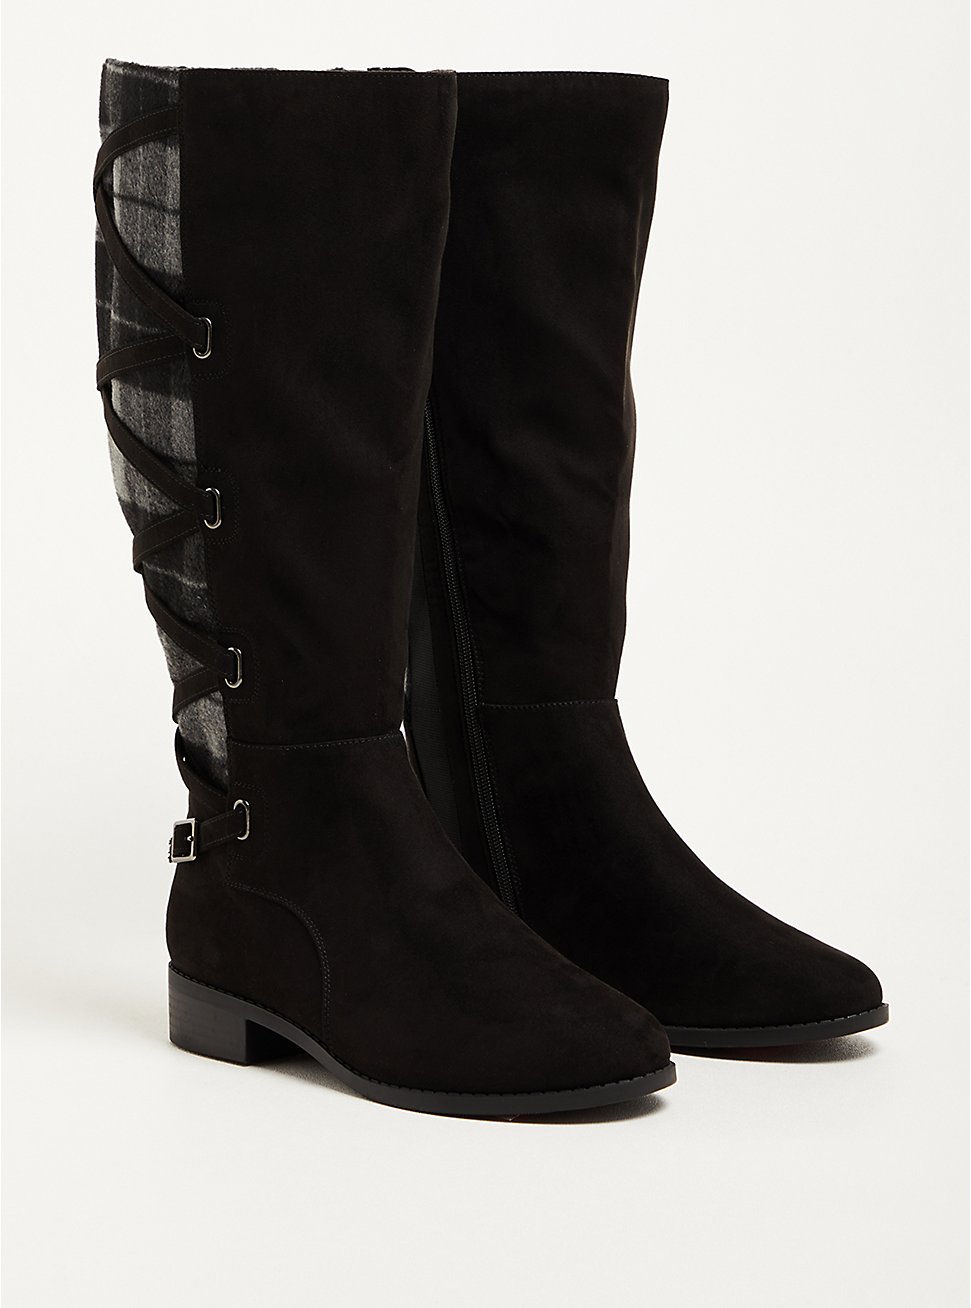 Plus Size Corset Knee Boot - Faux Suede Plaid Black (WW), BLACK, hi-res